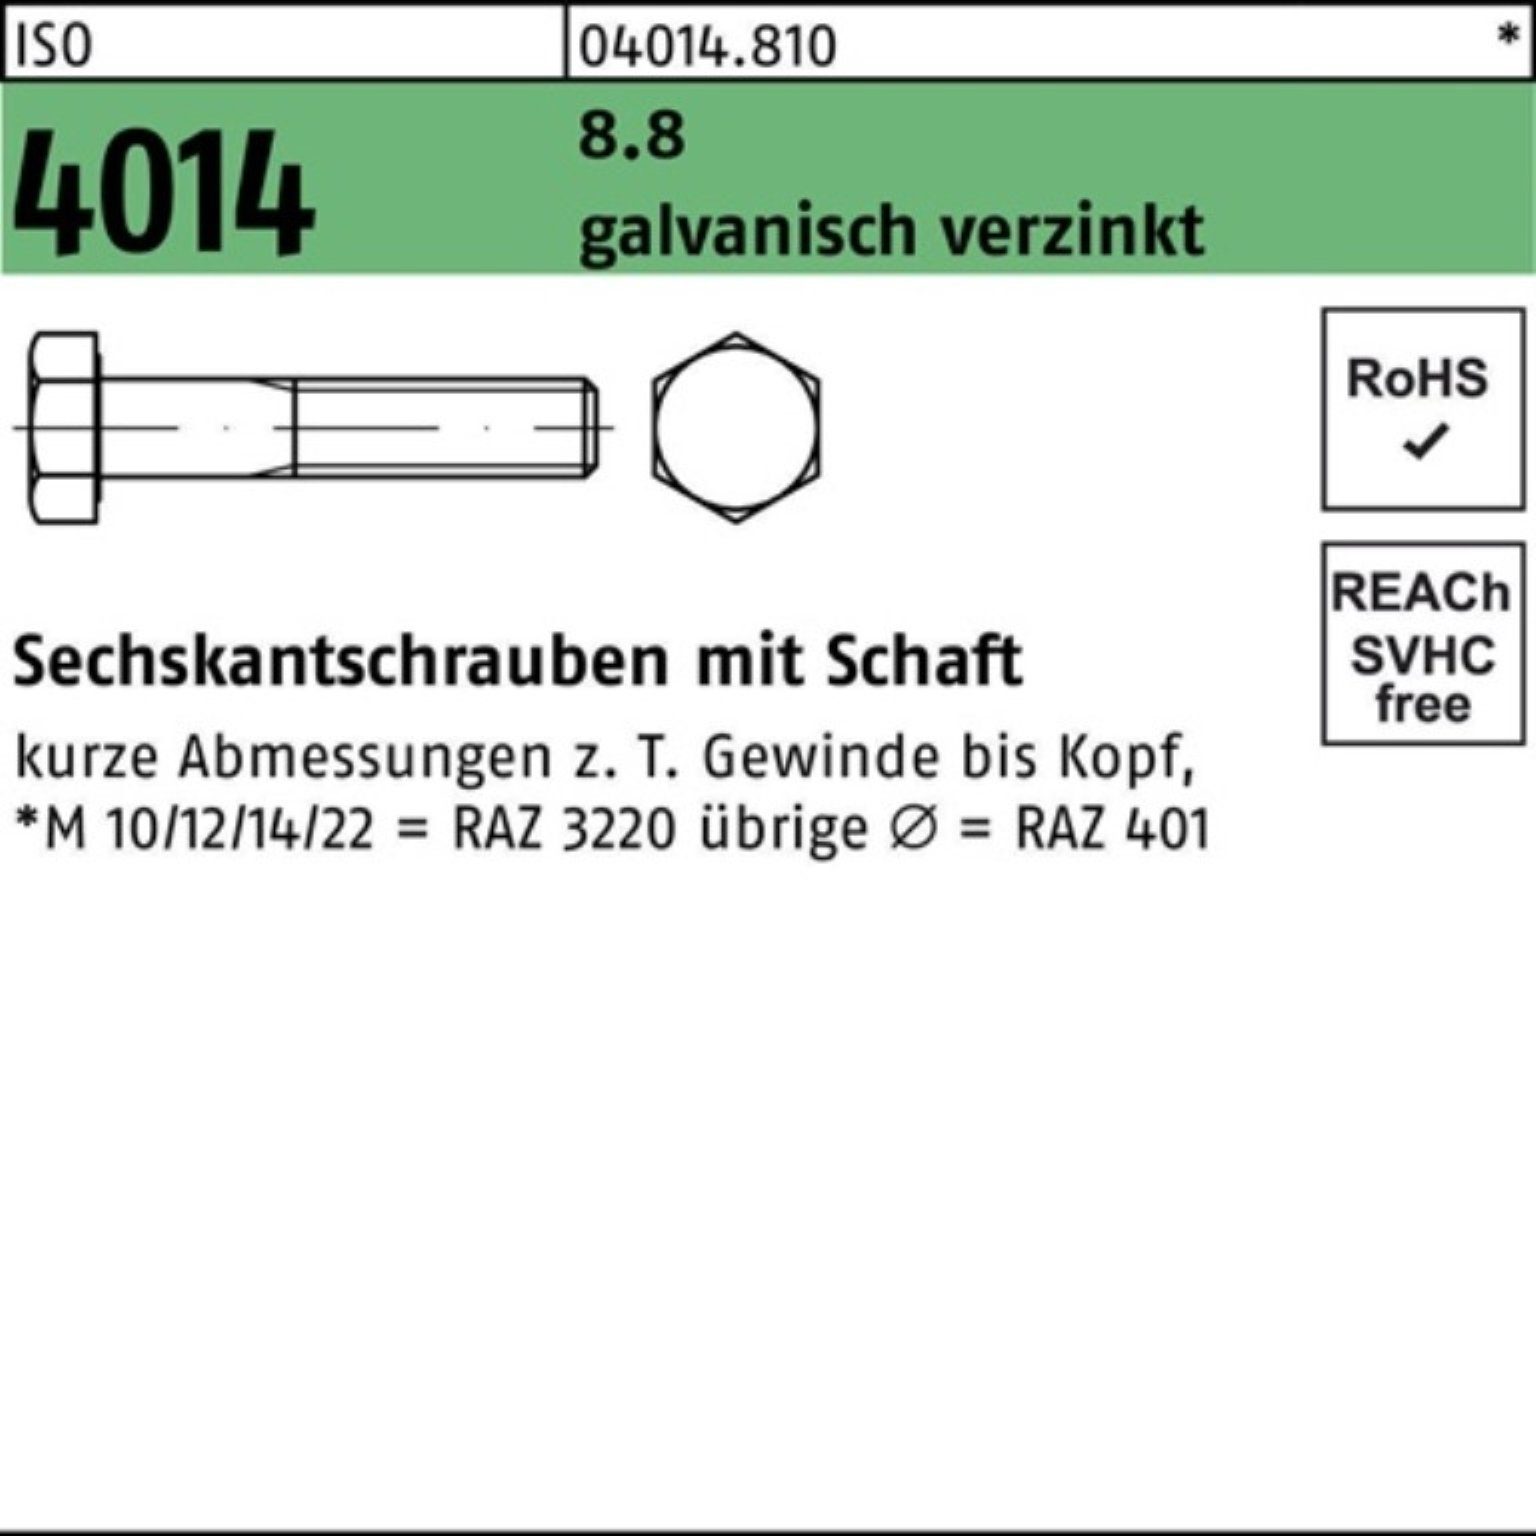 Bufab Sechskantschraube ISO 100 Schaft M27x 1 100er Sechskantschraube 8.8 galv.verz. Pack 4014